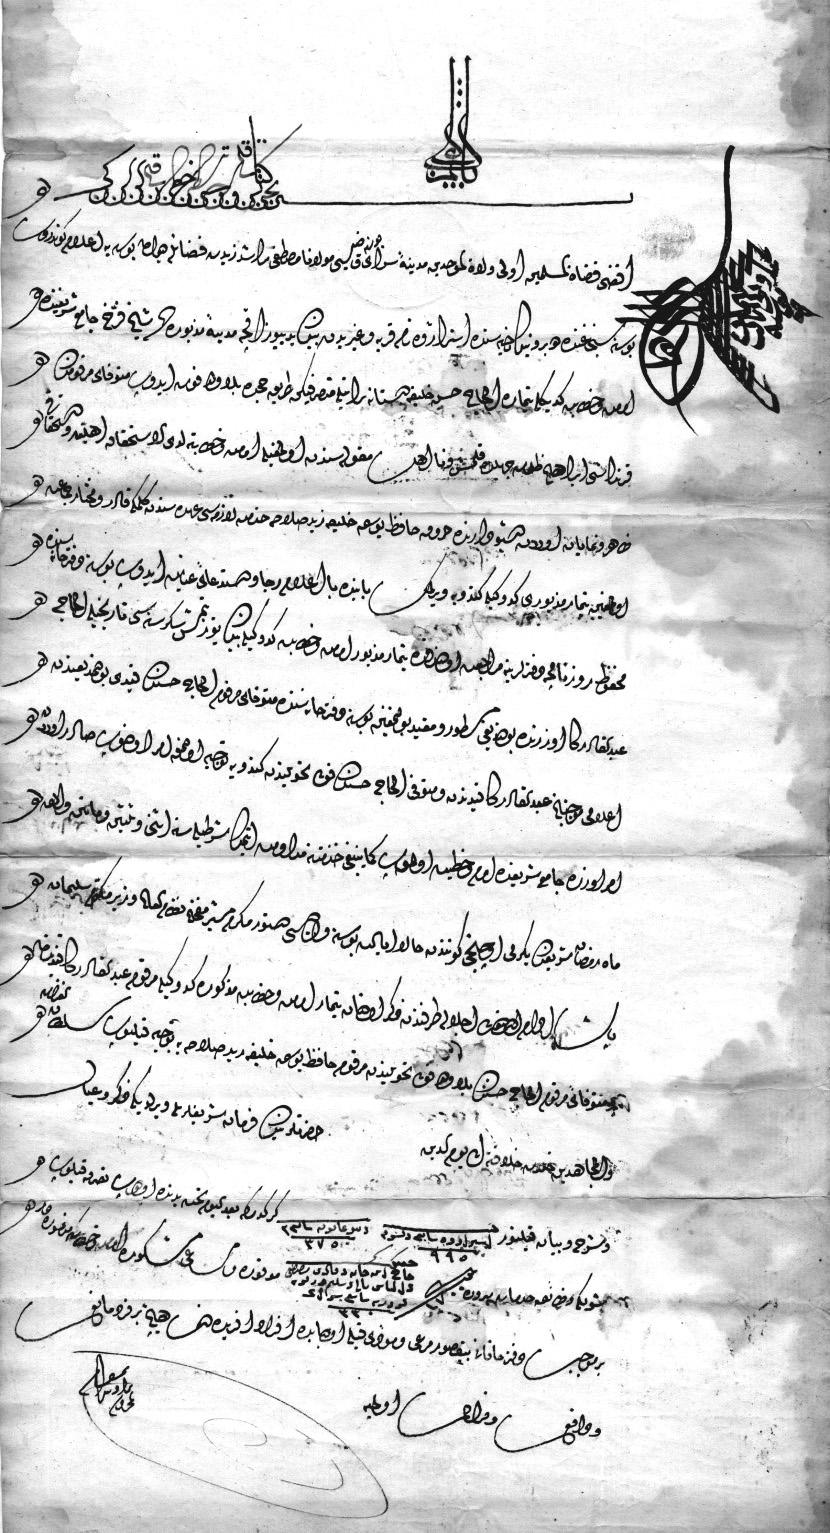 Funkcija osmanskog valije u Bosanskom ejaletu i dokumenti koje je izdavao brojnih kasnijih timarskih tahvil pisama i valijinih berata čijim se uručivanjem timarnicima osiguravala brzina i efikasnost